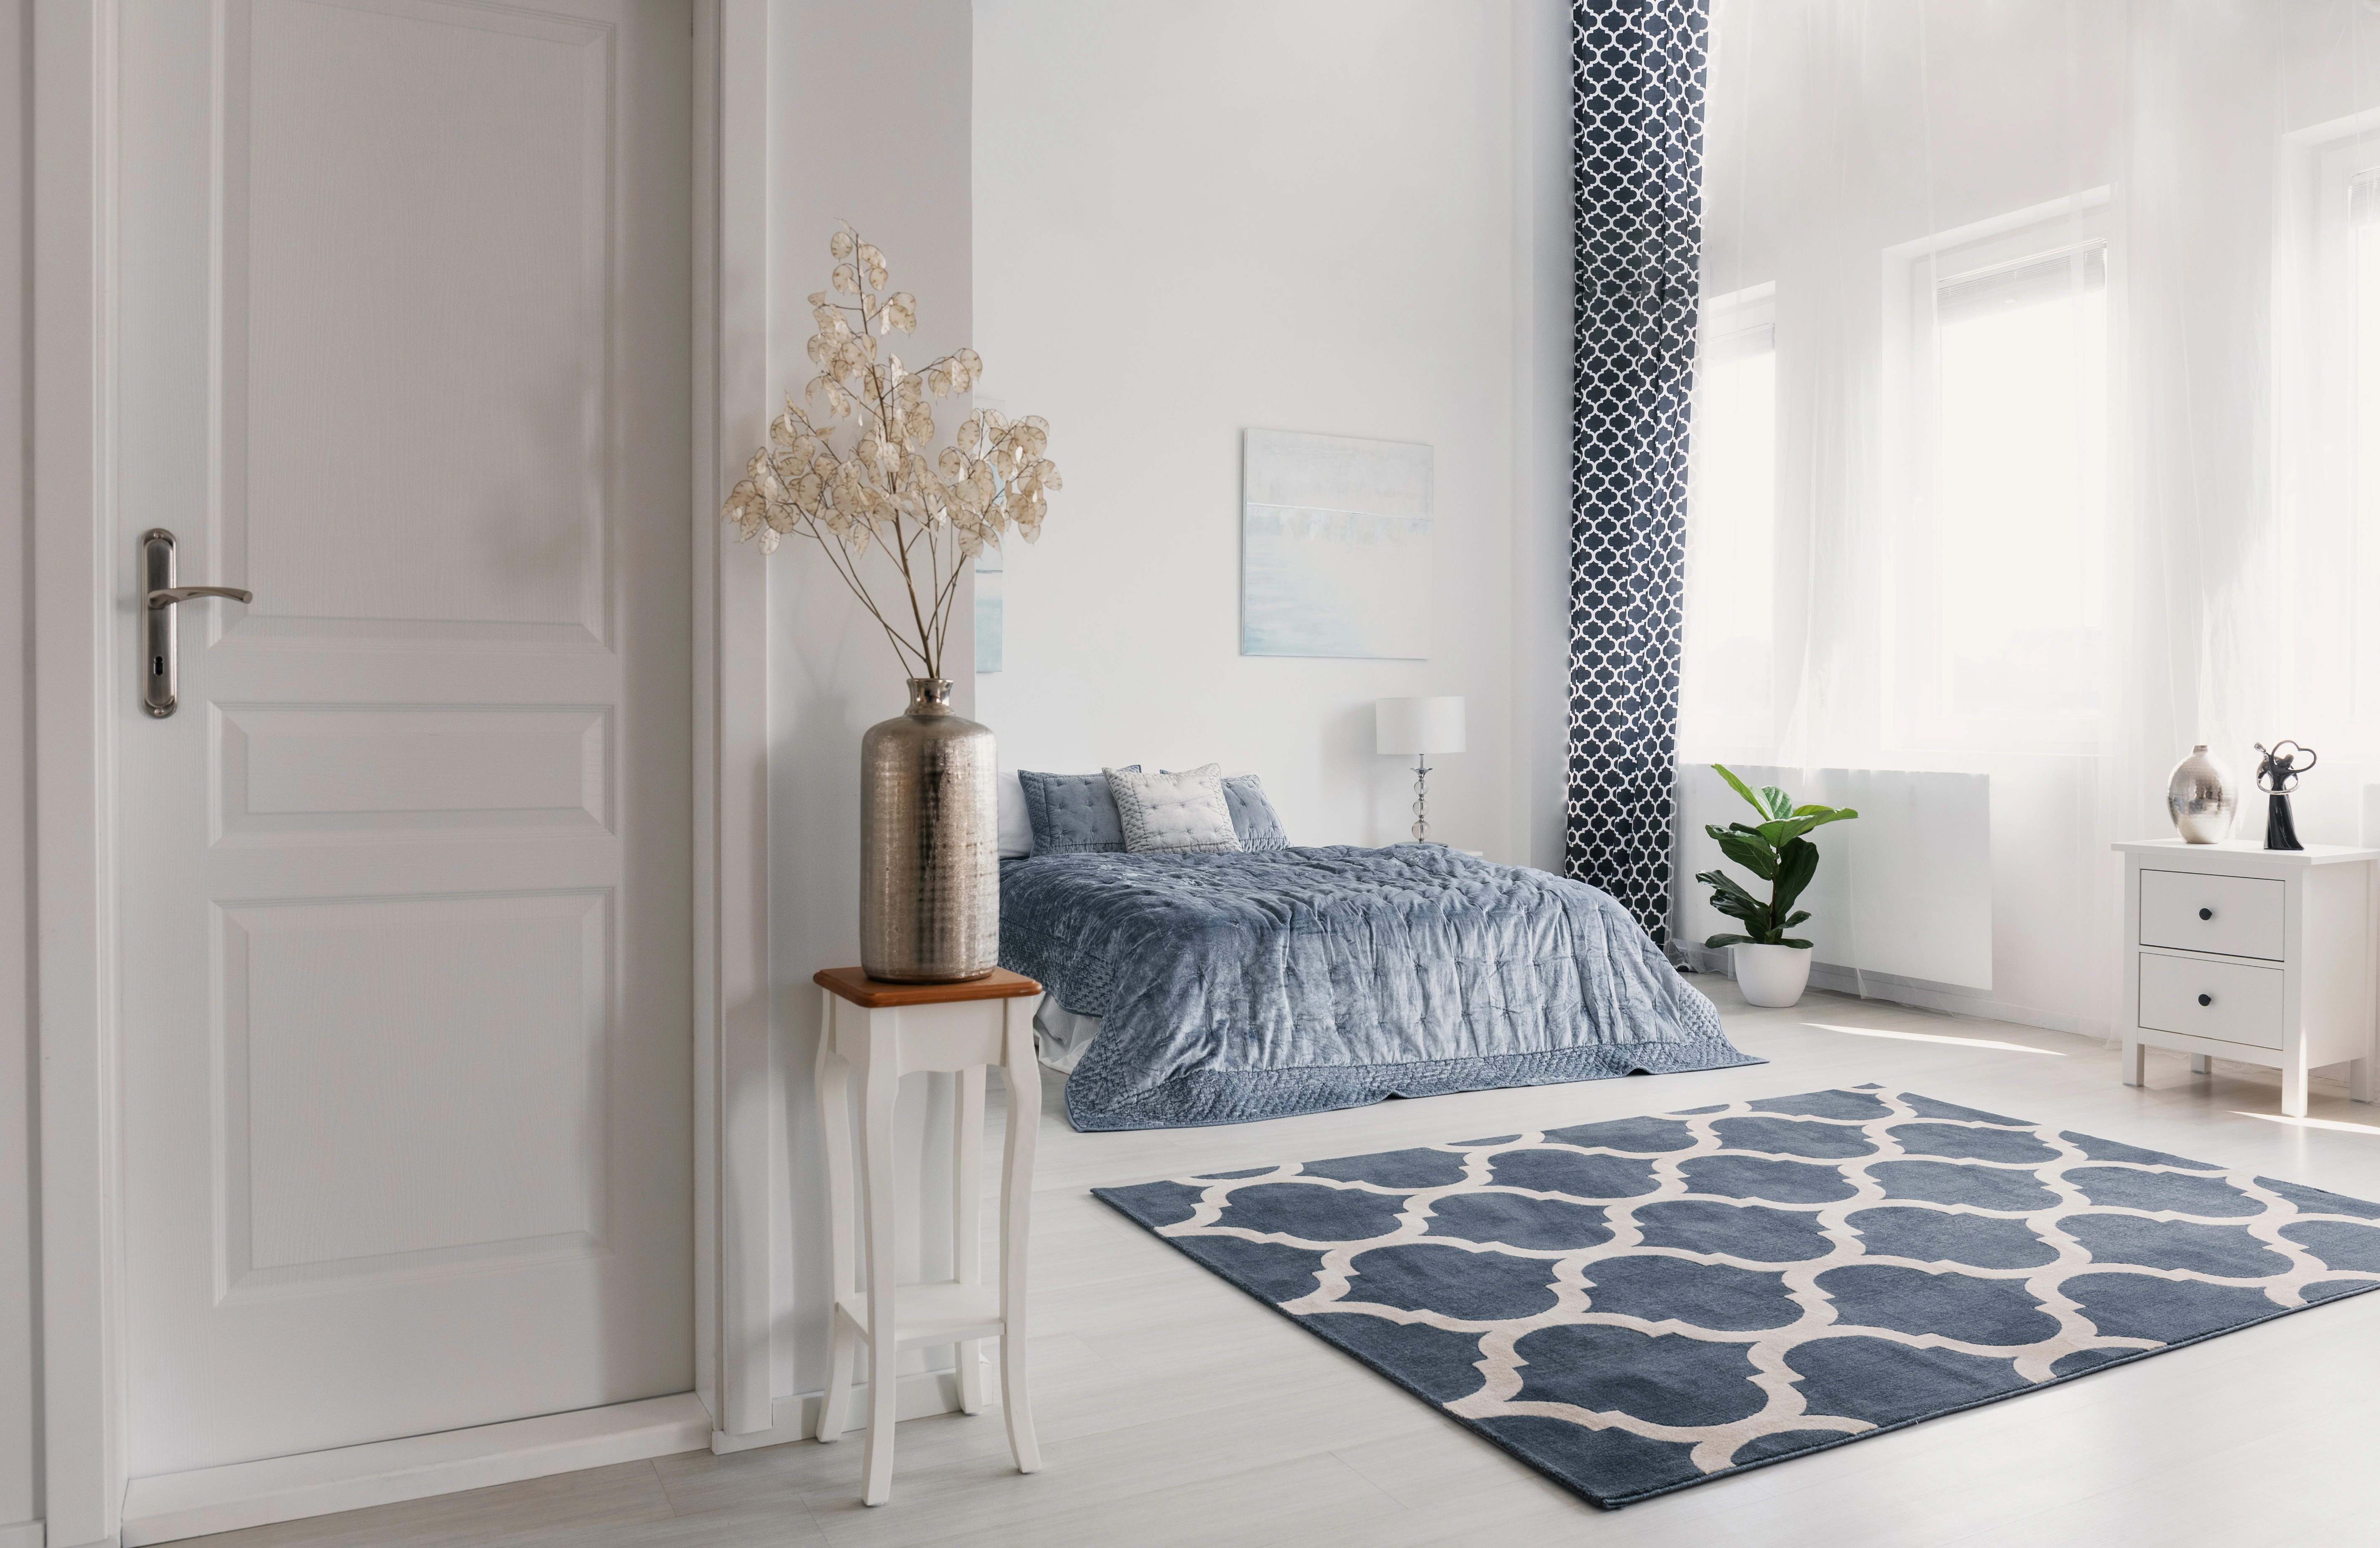 Inspiracja prezentująca sypialnię w kolorze białym z łóżkiem z niebieskimi dodatkami, styl nowojorski. Element charakterystyczny: łóżko z niebieskimi dodatkami